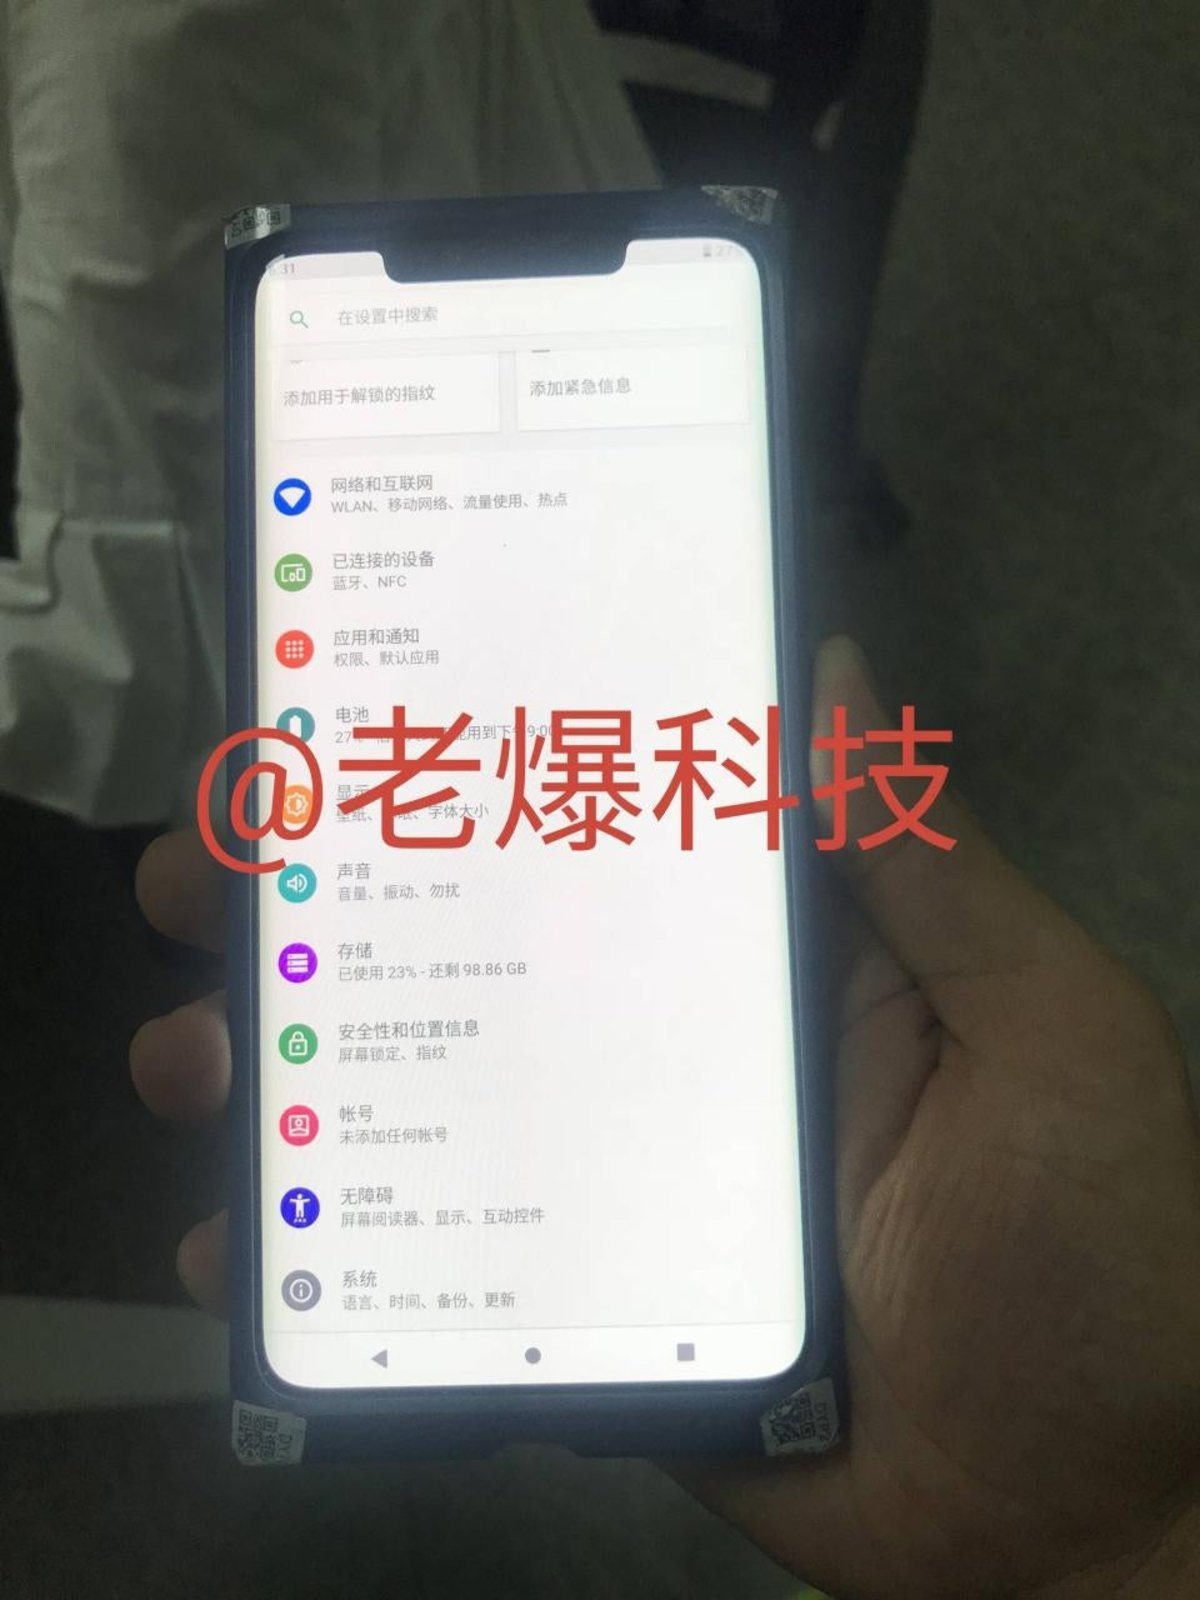 El Huawei Mate 20 Pro vuelve a filtrarse: casi 7 pulgadas y Android 9